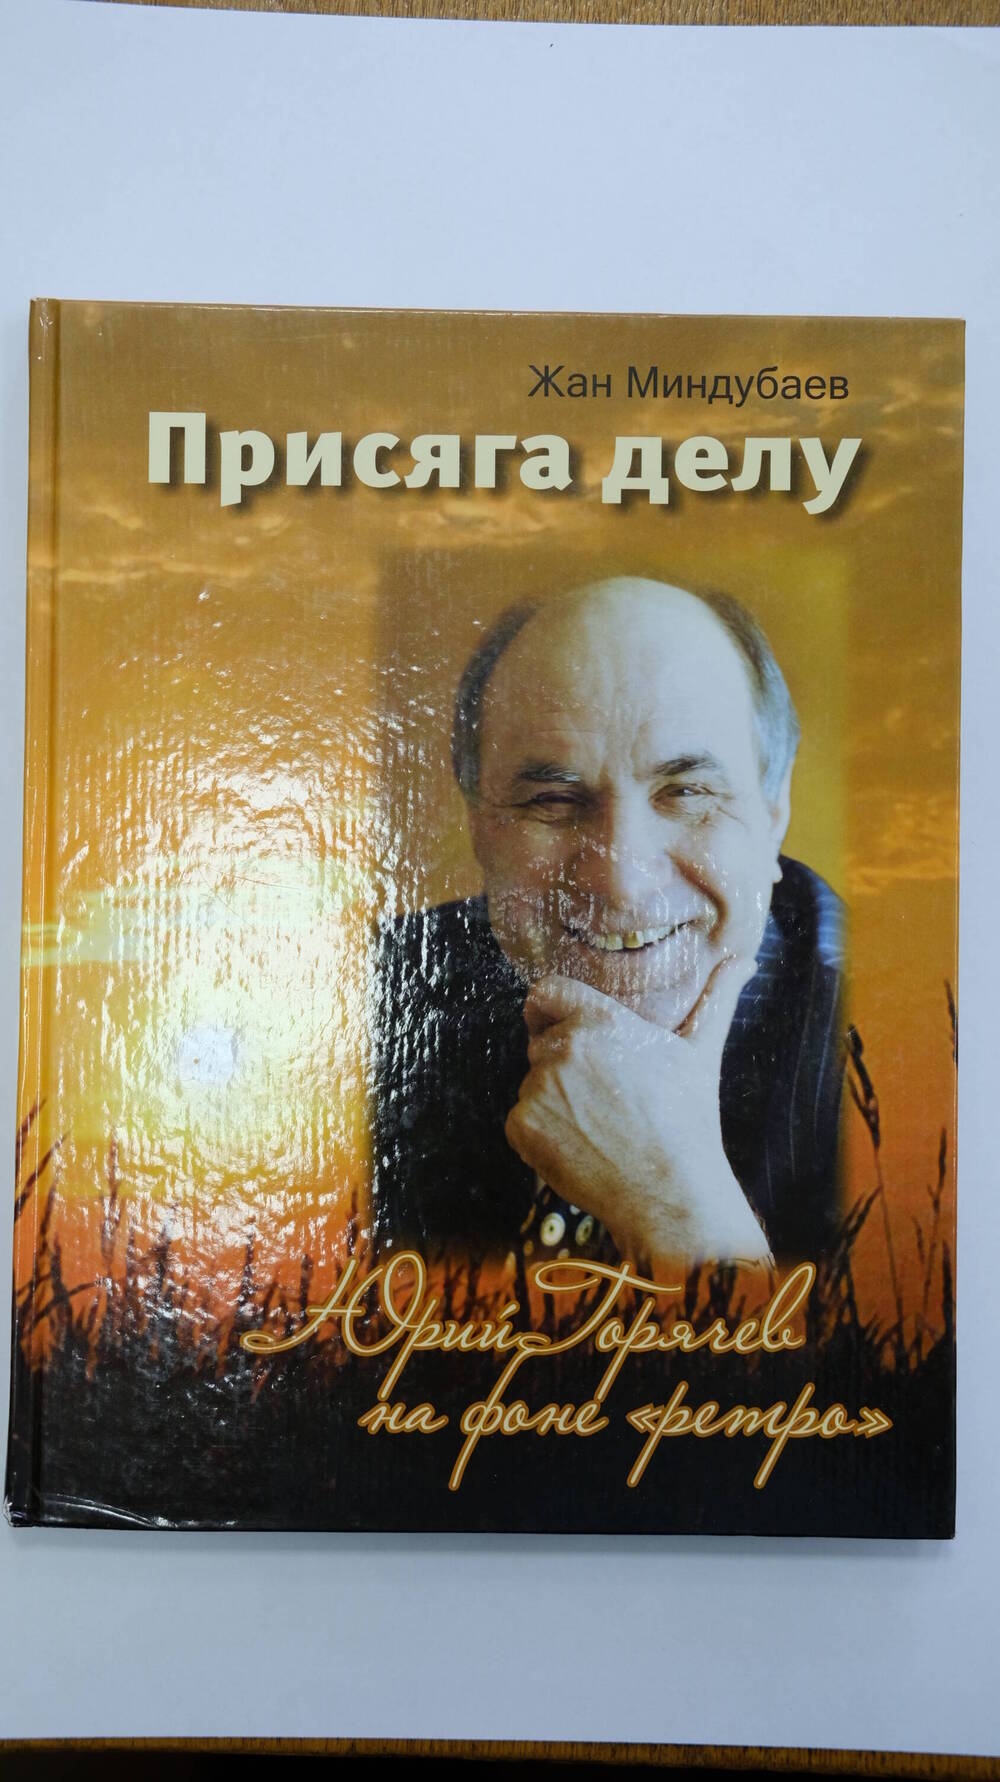 Книга Присяга делу.Юрий Горячев на фоне ретро Ж.Миндубаев 2010г.